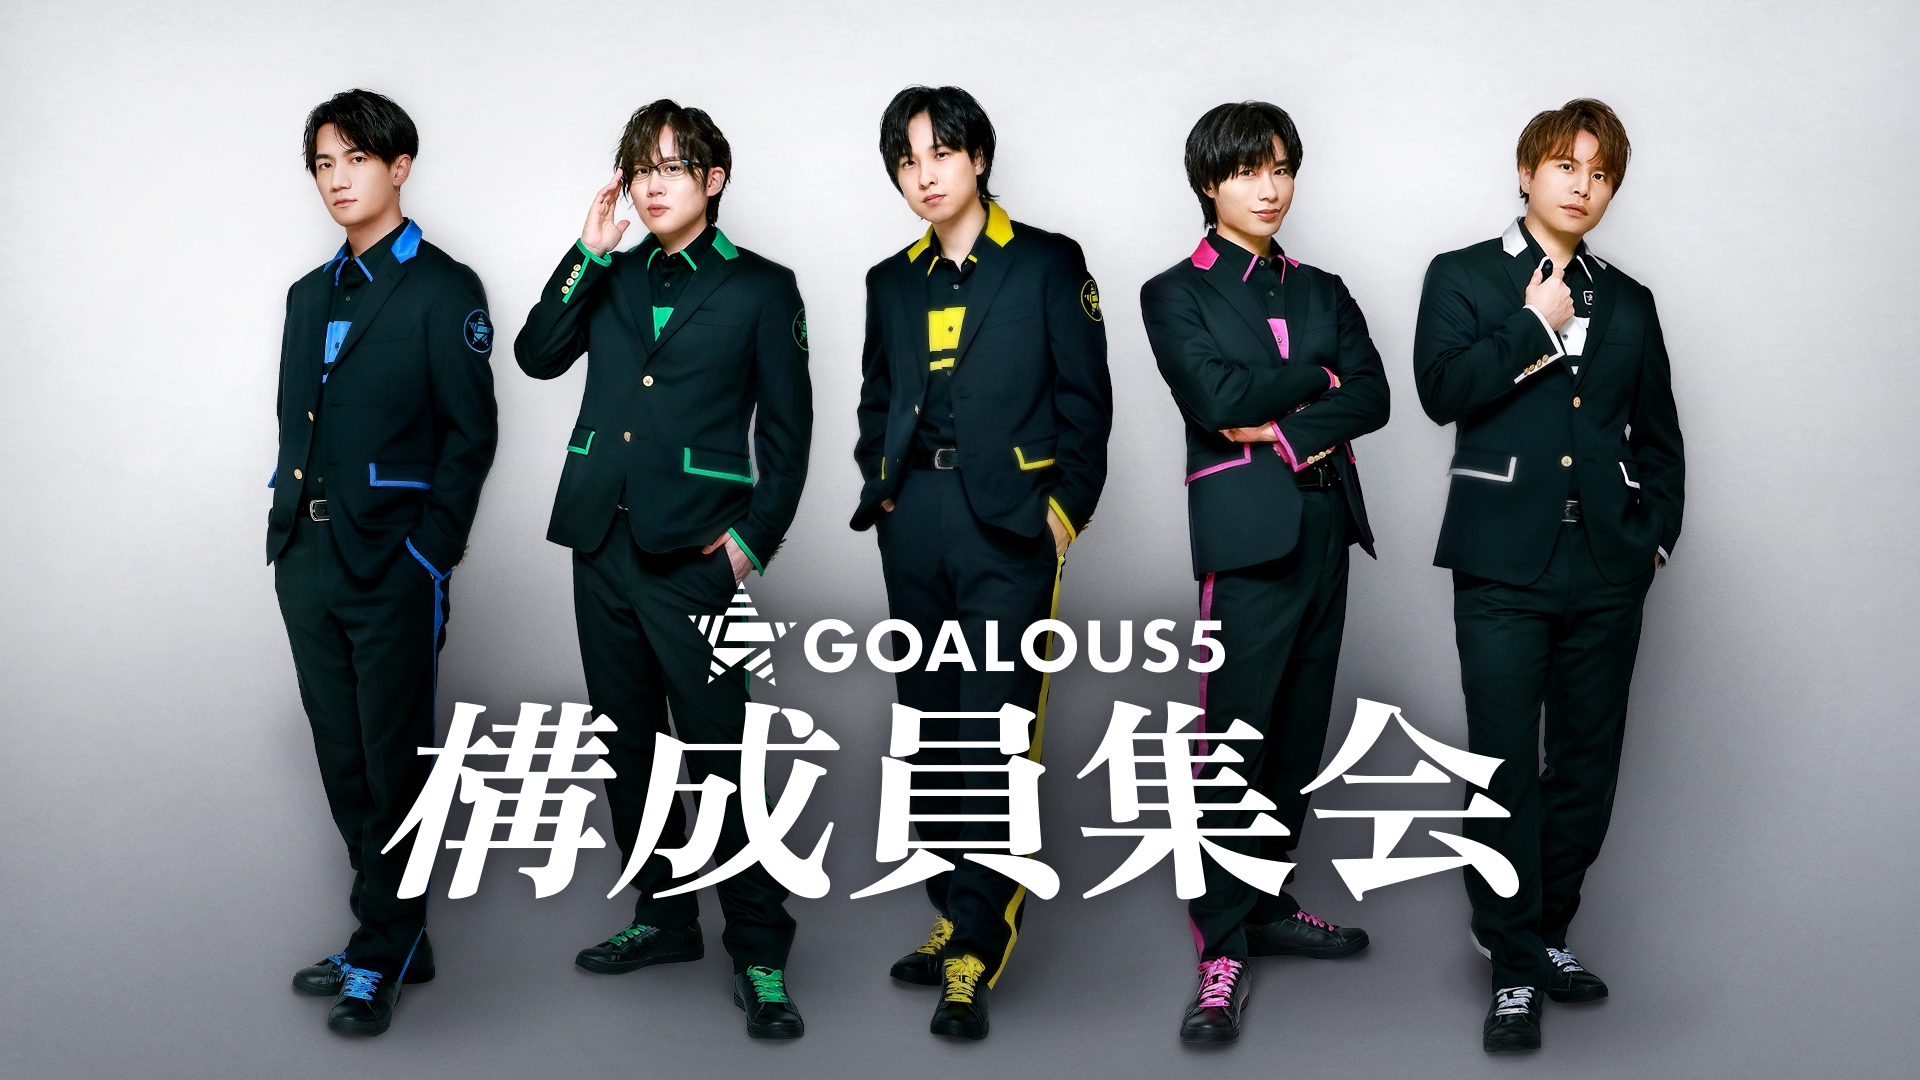 GOALOUS5【MISSION:GO5】